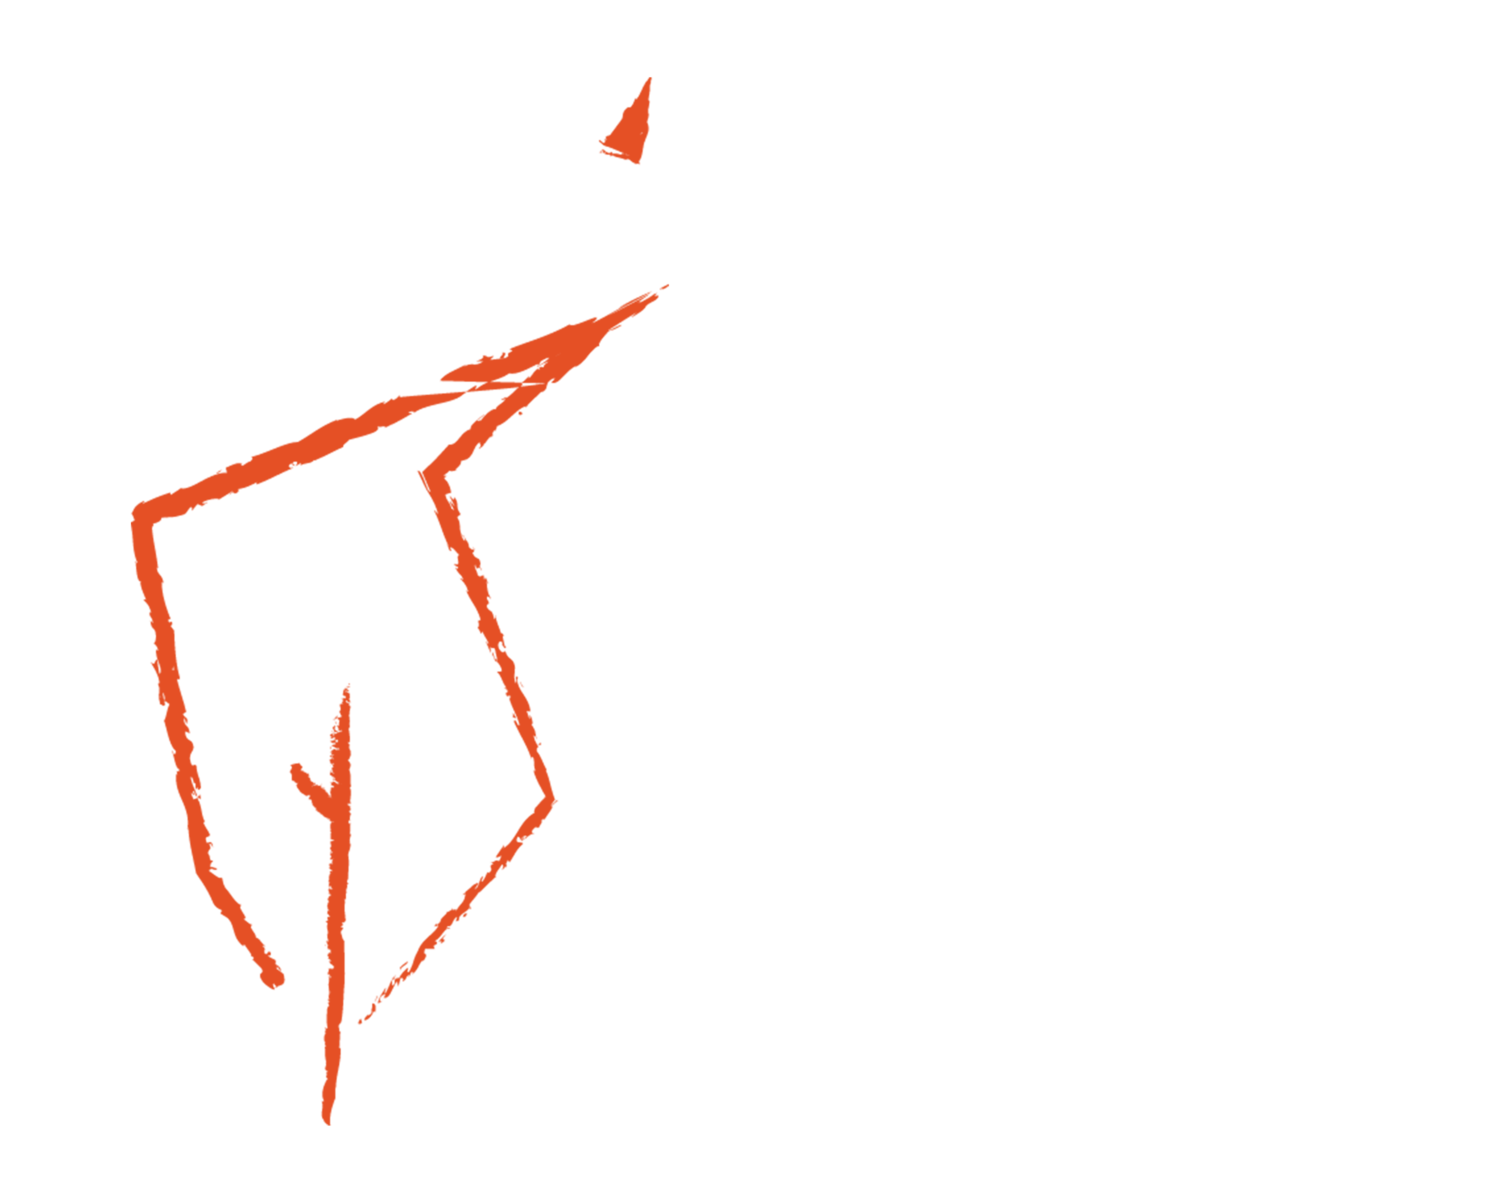 Burning Bush Films